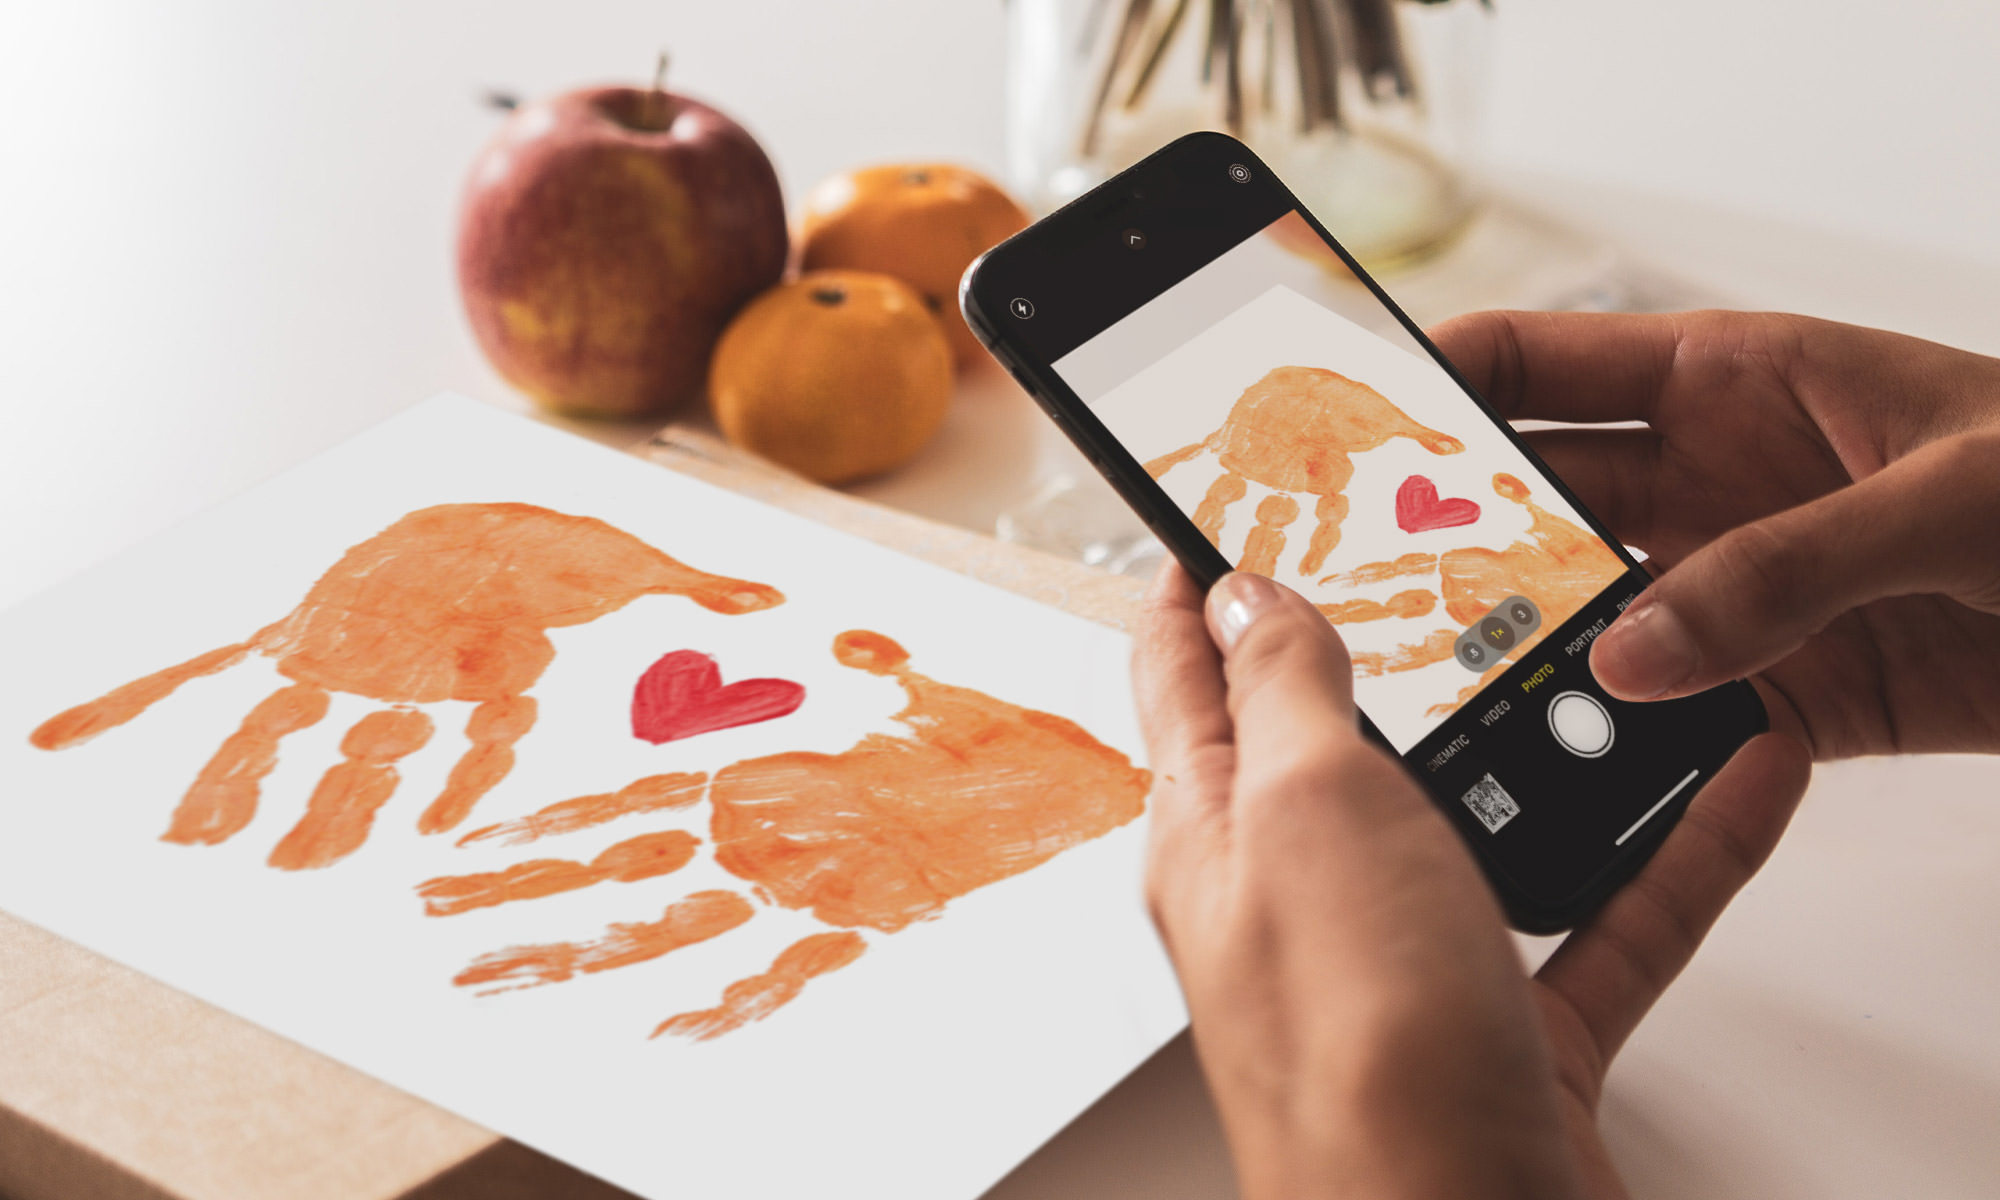 Taking photo of hand print art using smartphone camera